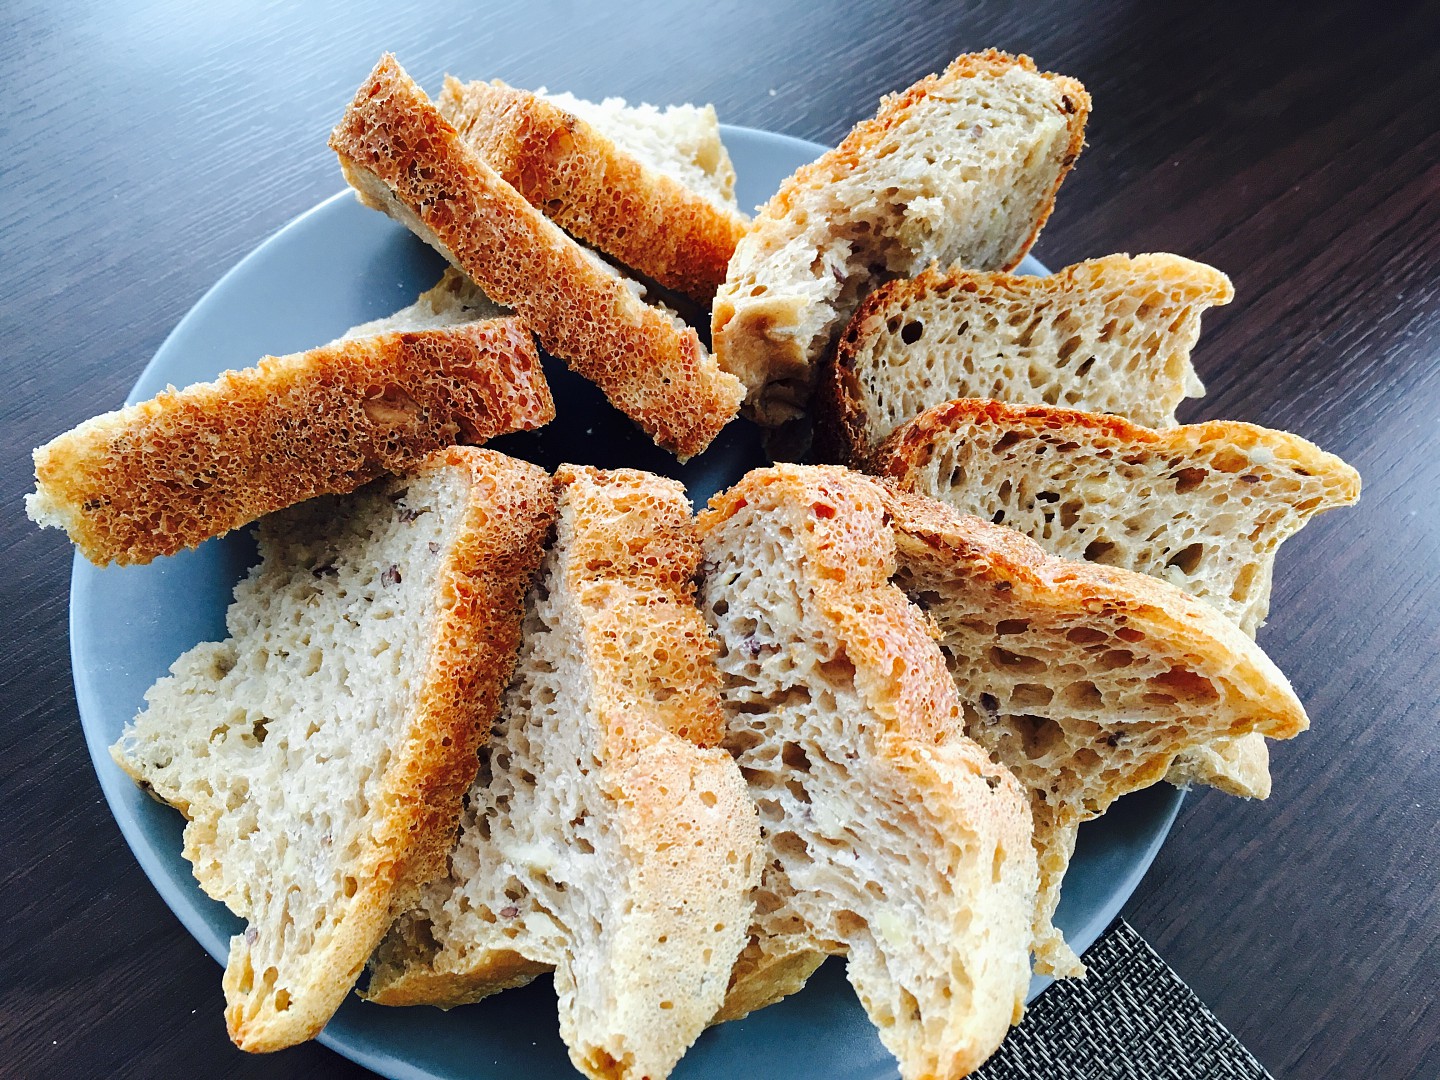 Žitný chléb z domácí pekárny recept